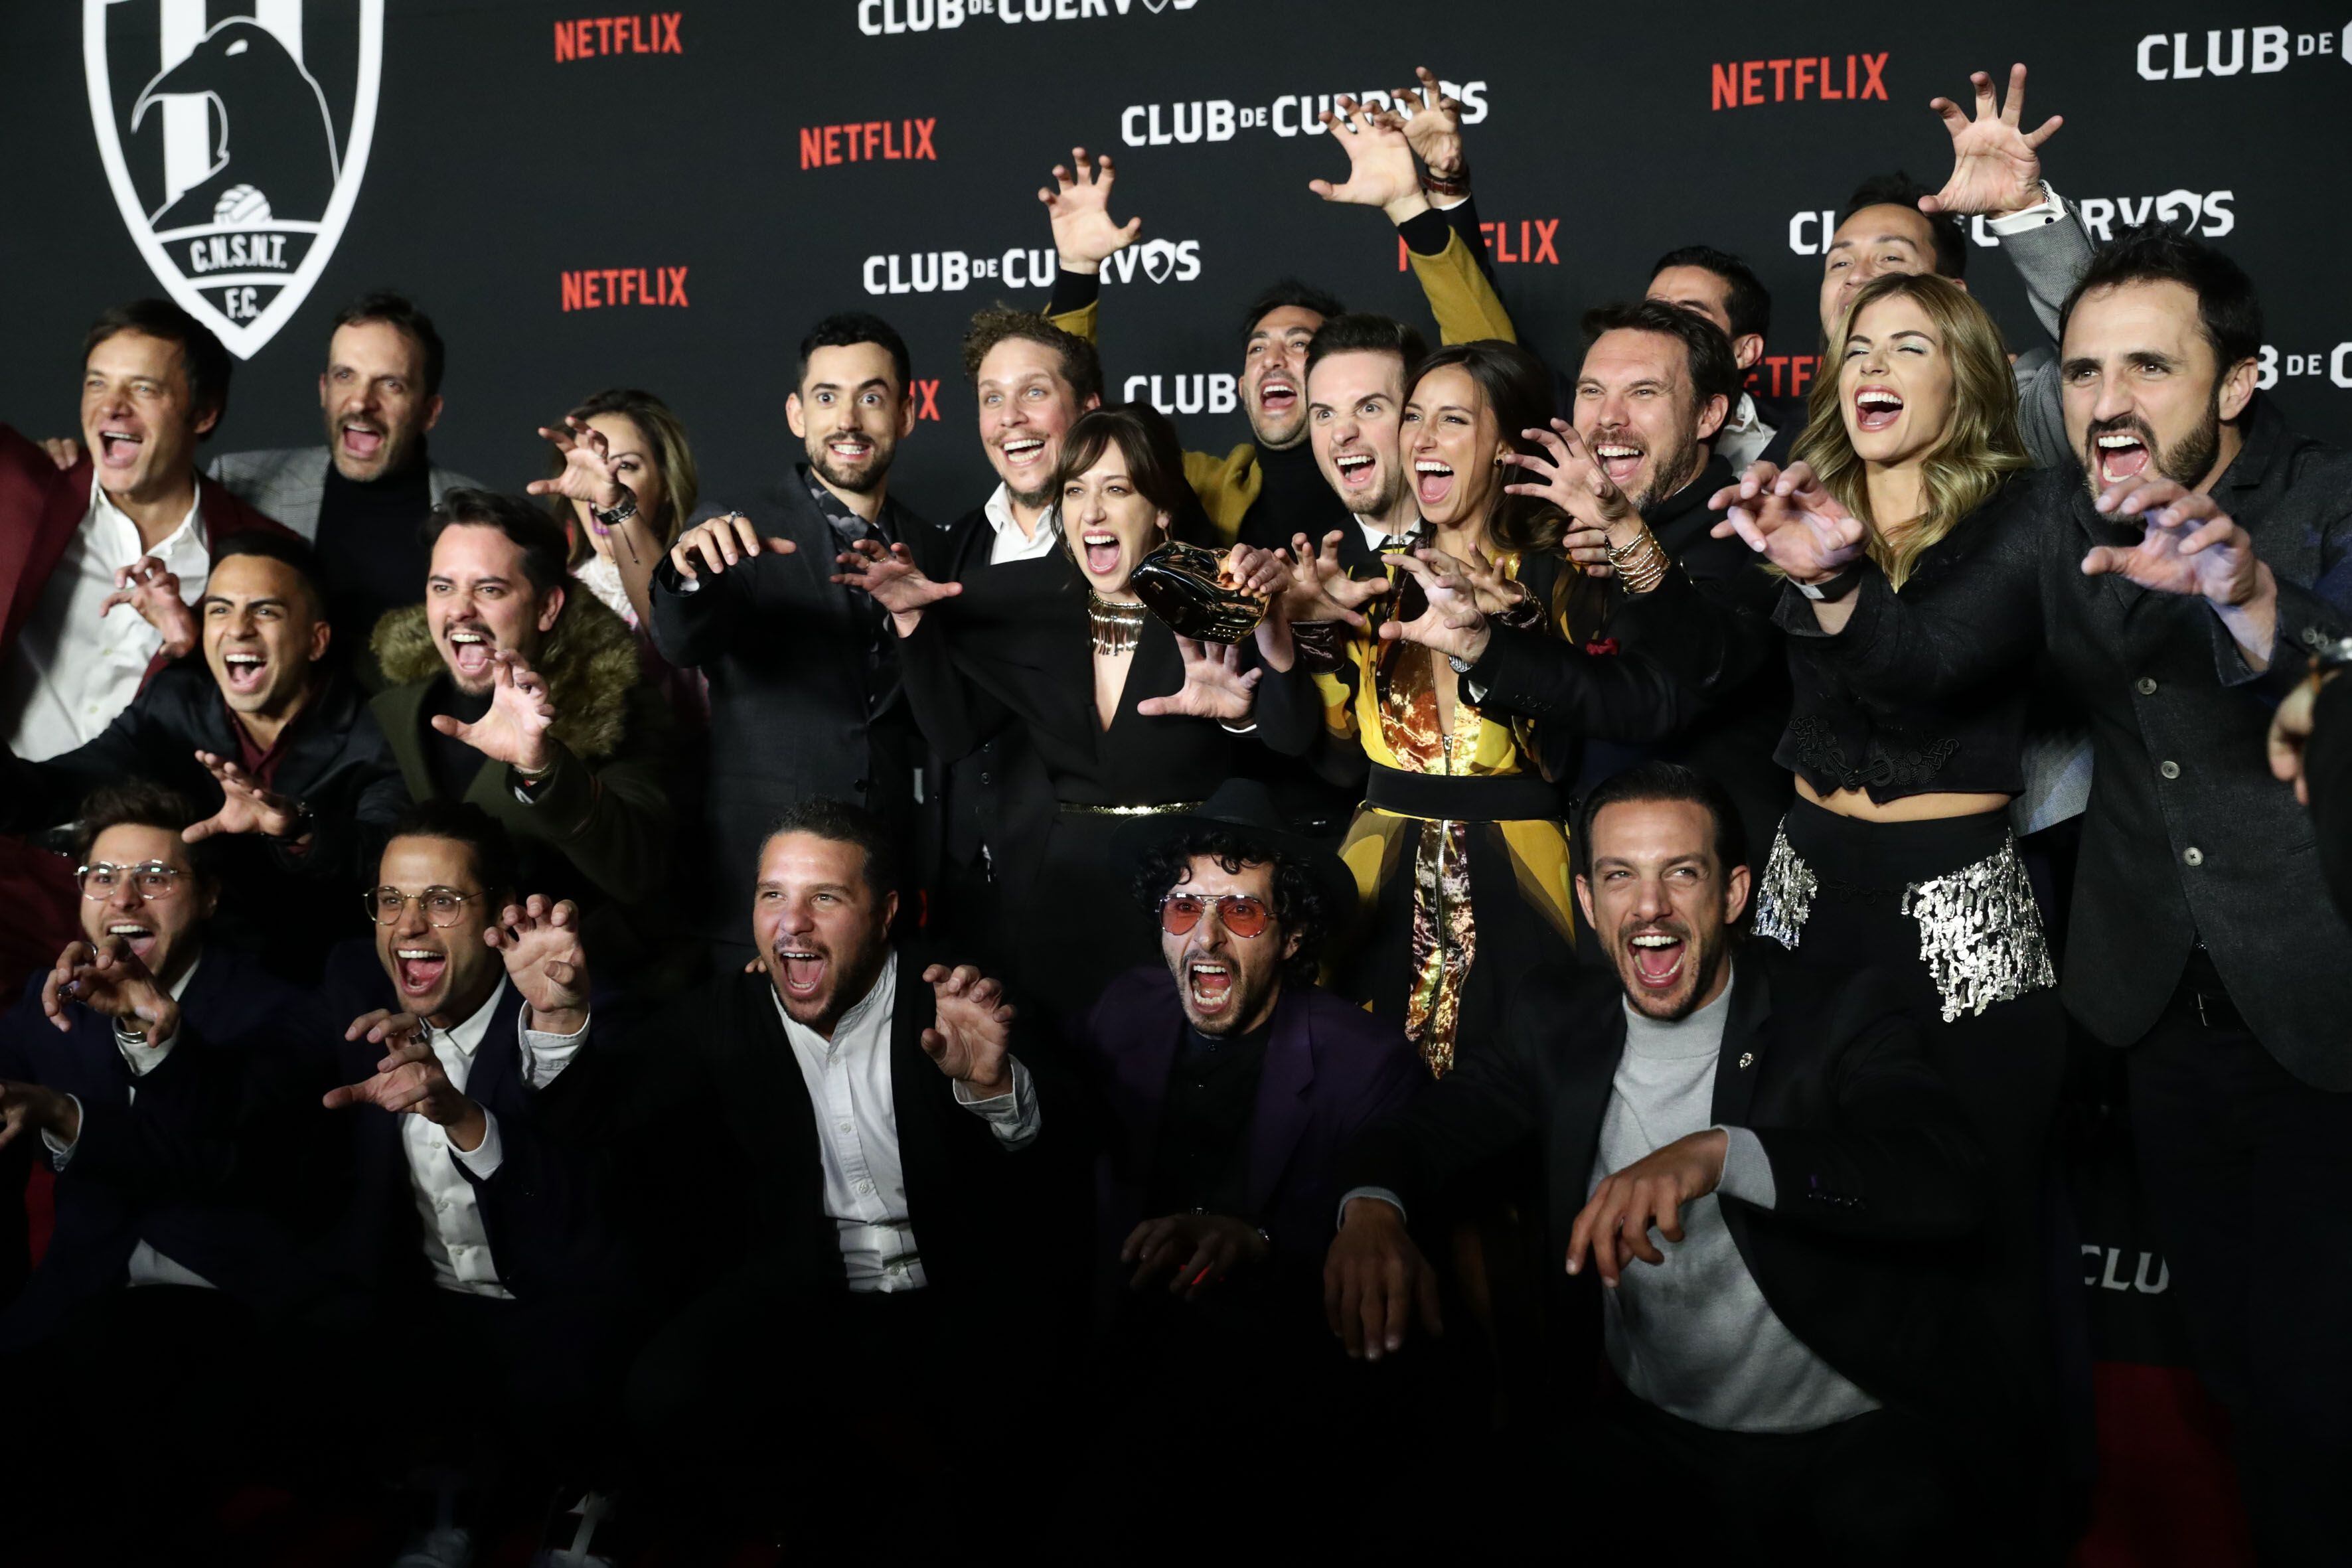 Club de cuervos” se despide de Netflix | La Teja